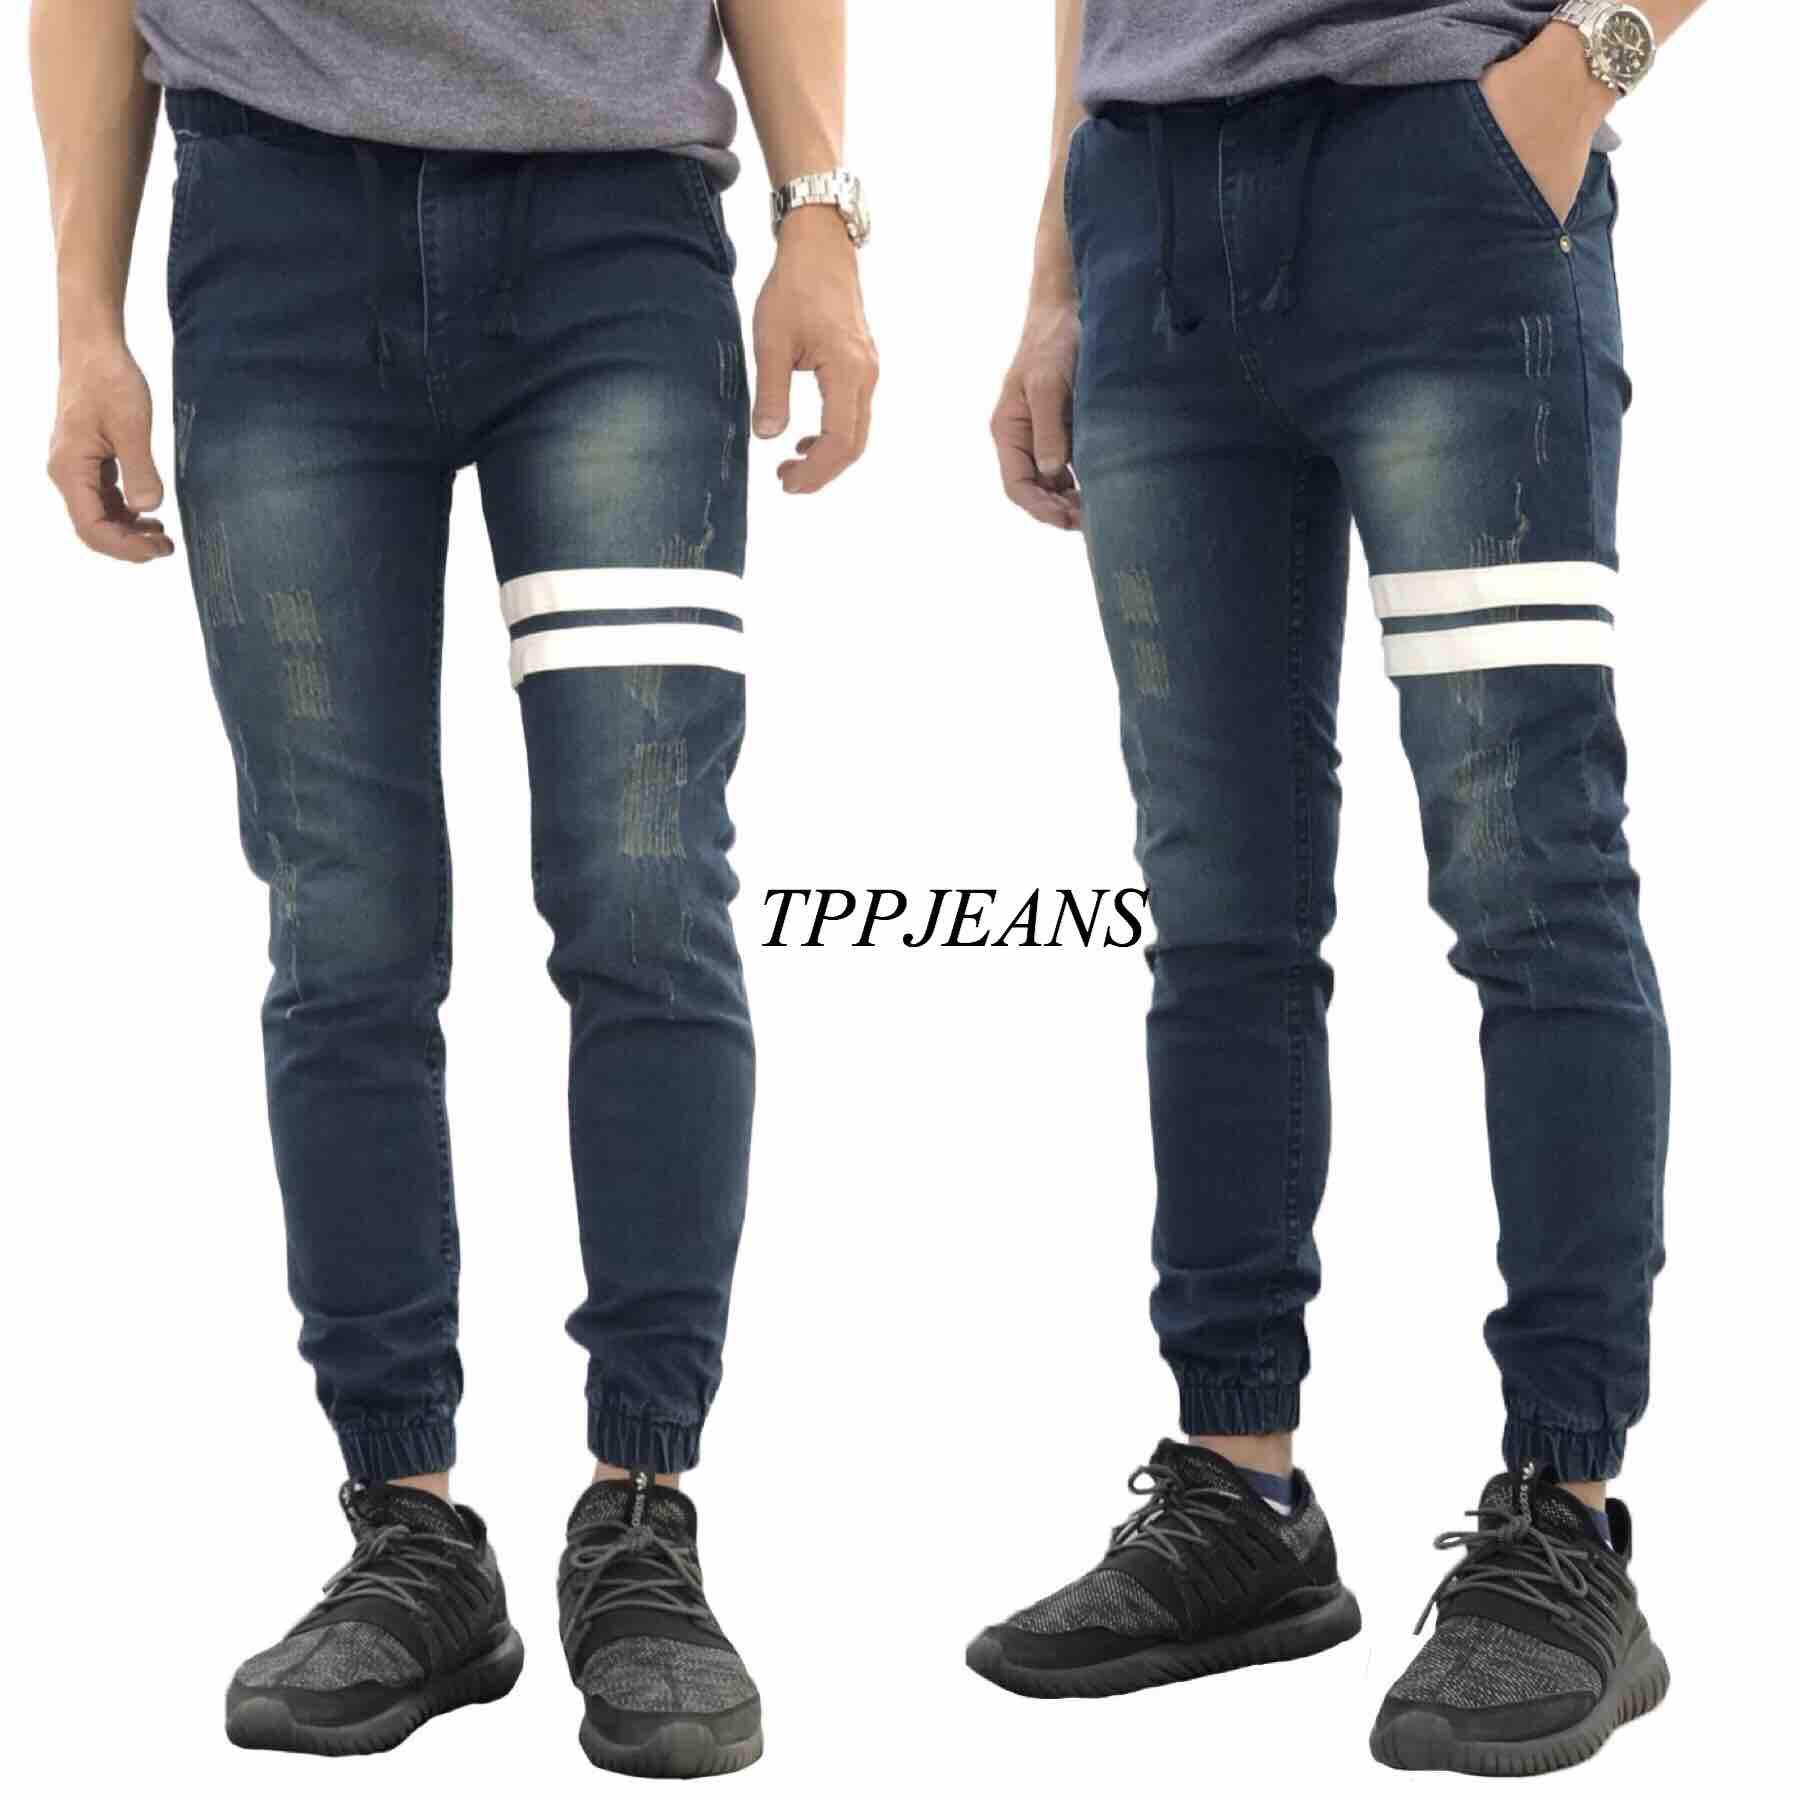 TPPJEANS Jogger Jeans กางเกงยีนส์ จ๊อกเกอร์แต่งแถบขาว ผ้ายืดเอวยาง มีเชือกไซส์ 28”-44"